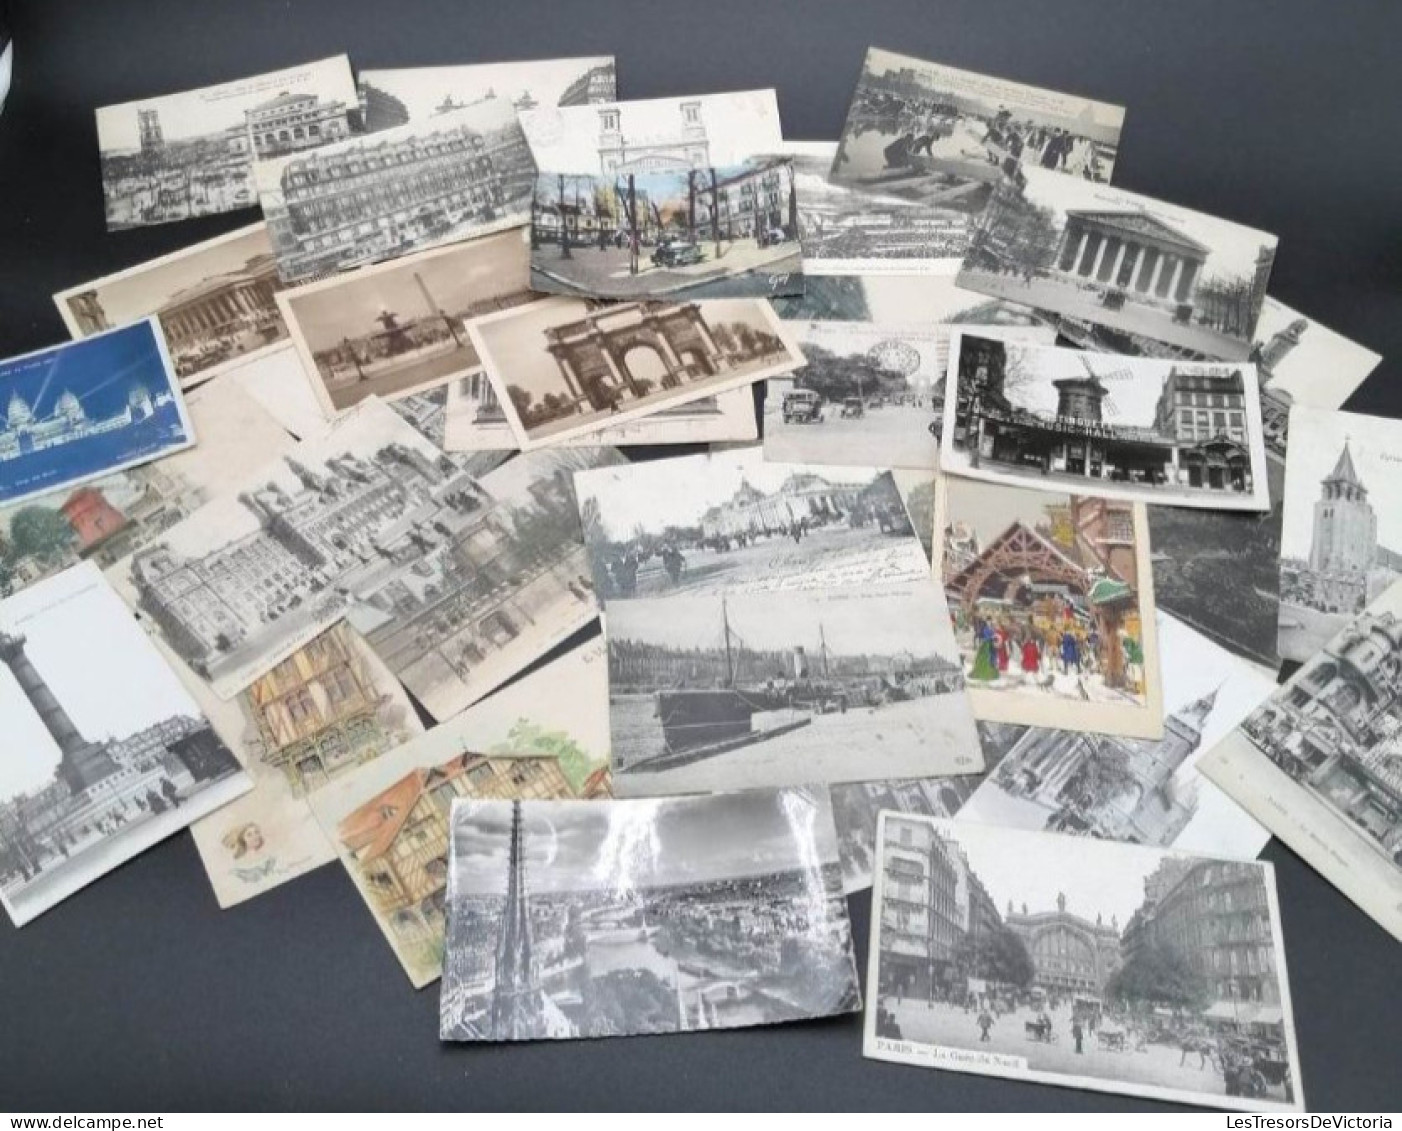 France - Paris - Lot de + de 330 cartes sur le thème de Paris - Carte Postale Ancienne / Semi-moderne / moderne